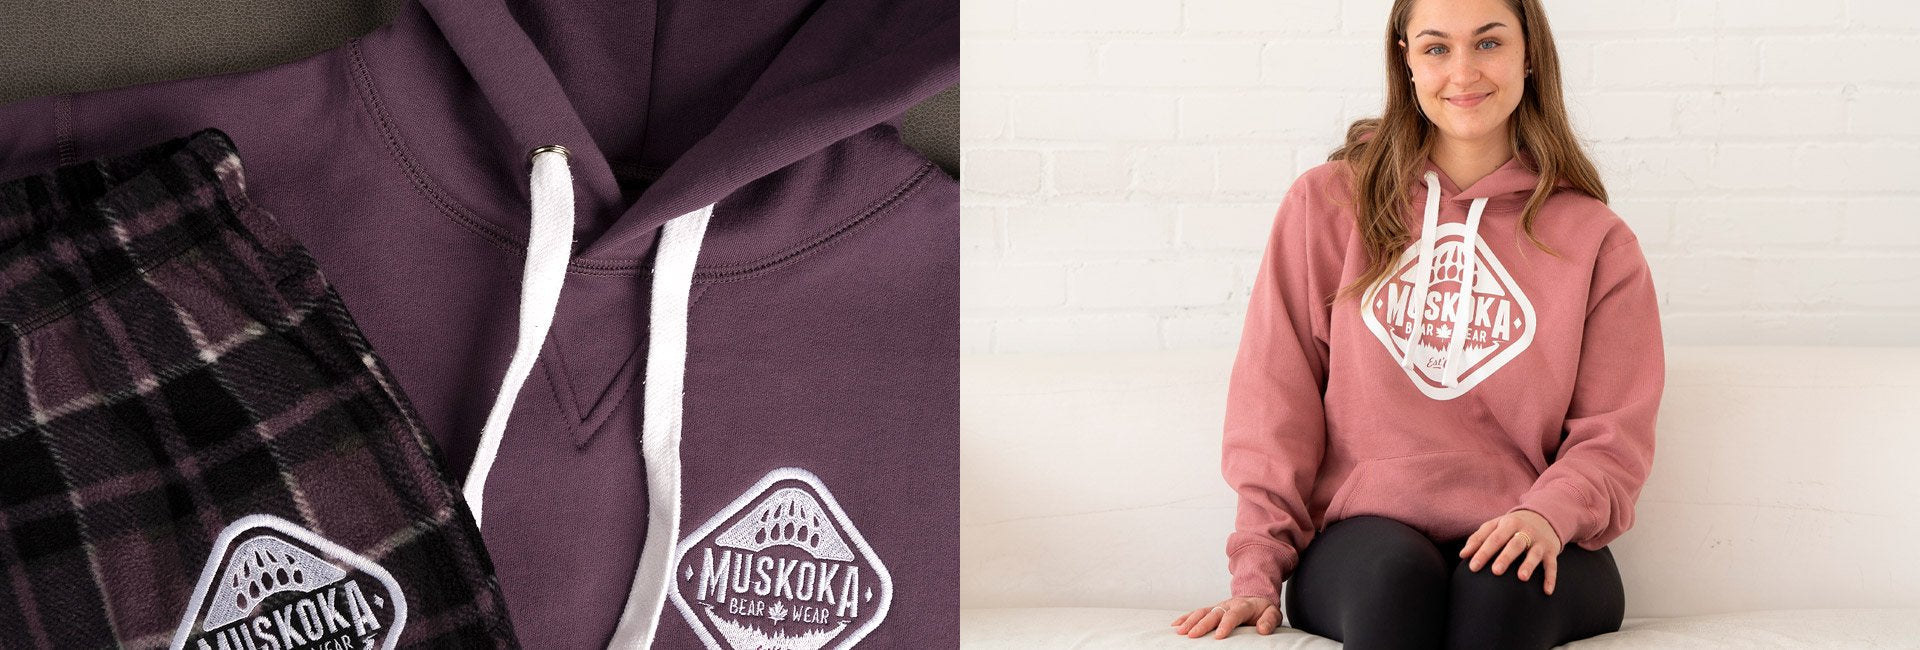 Muskoka Bear Wear – New Women's Arrivals